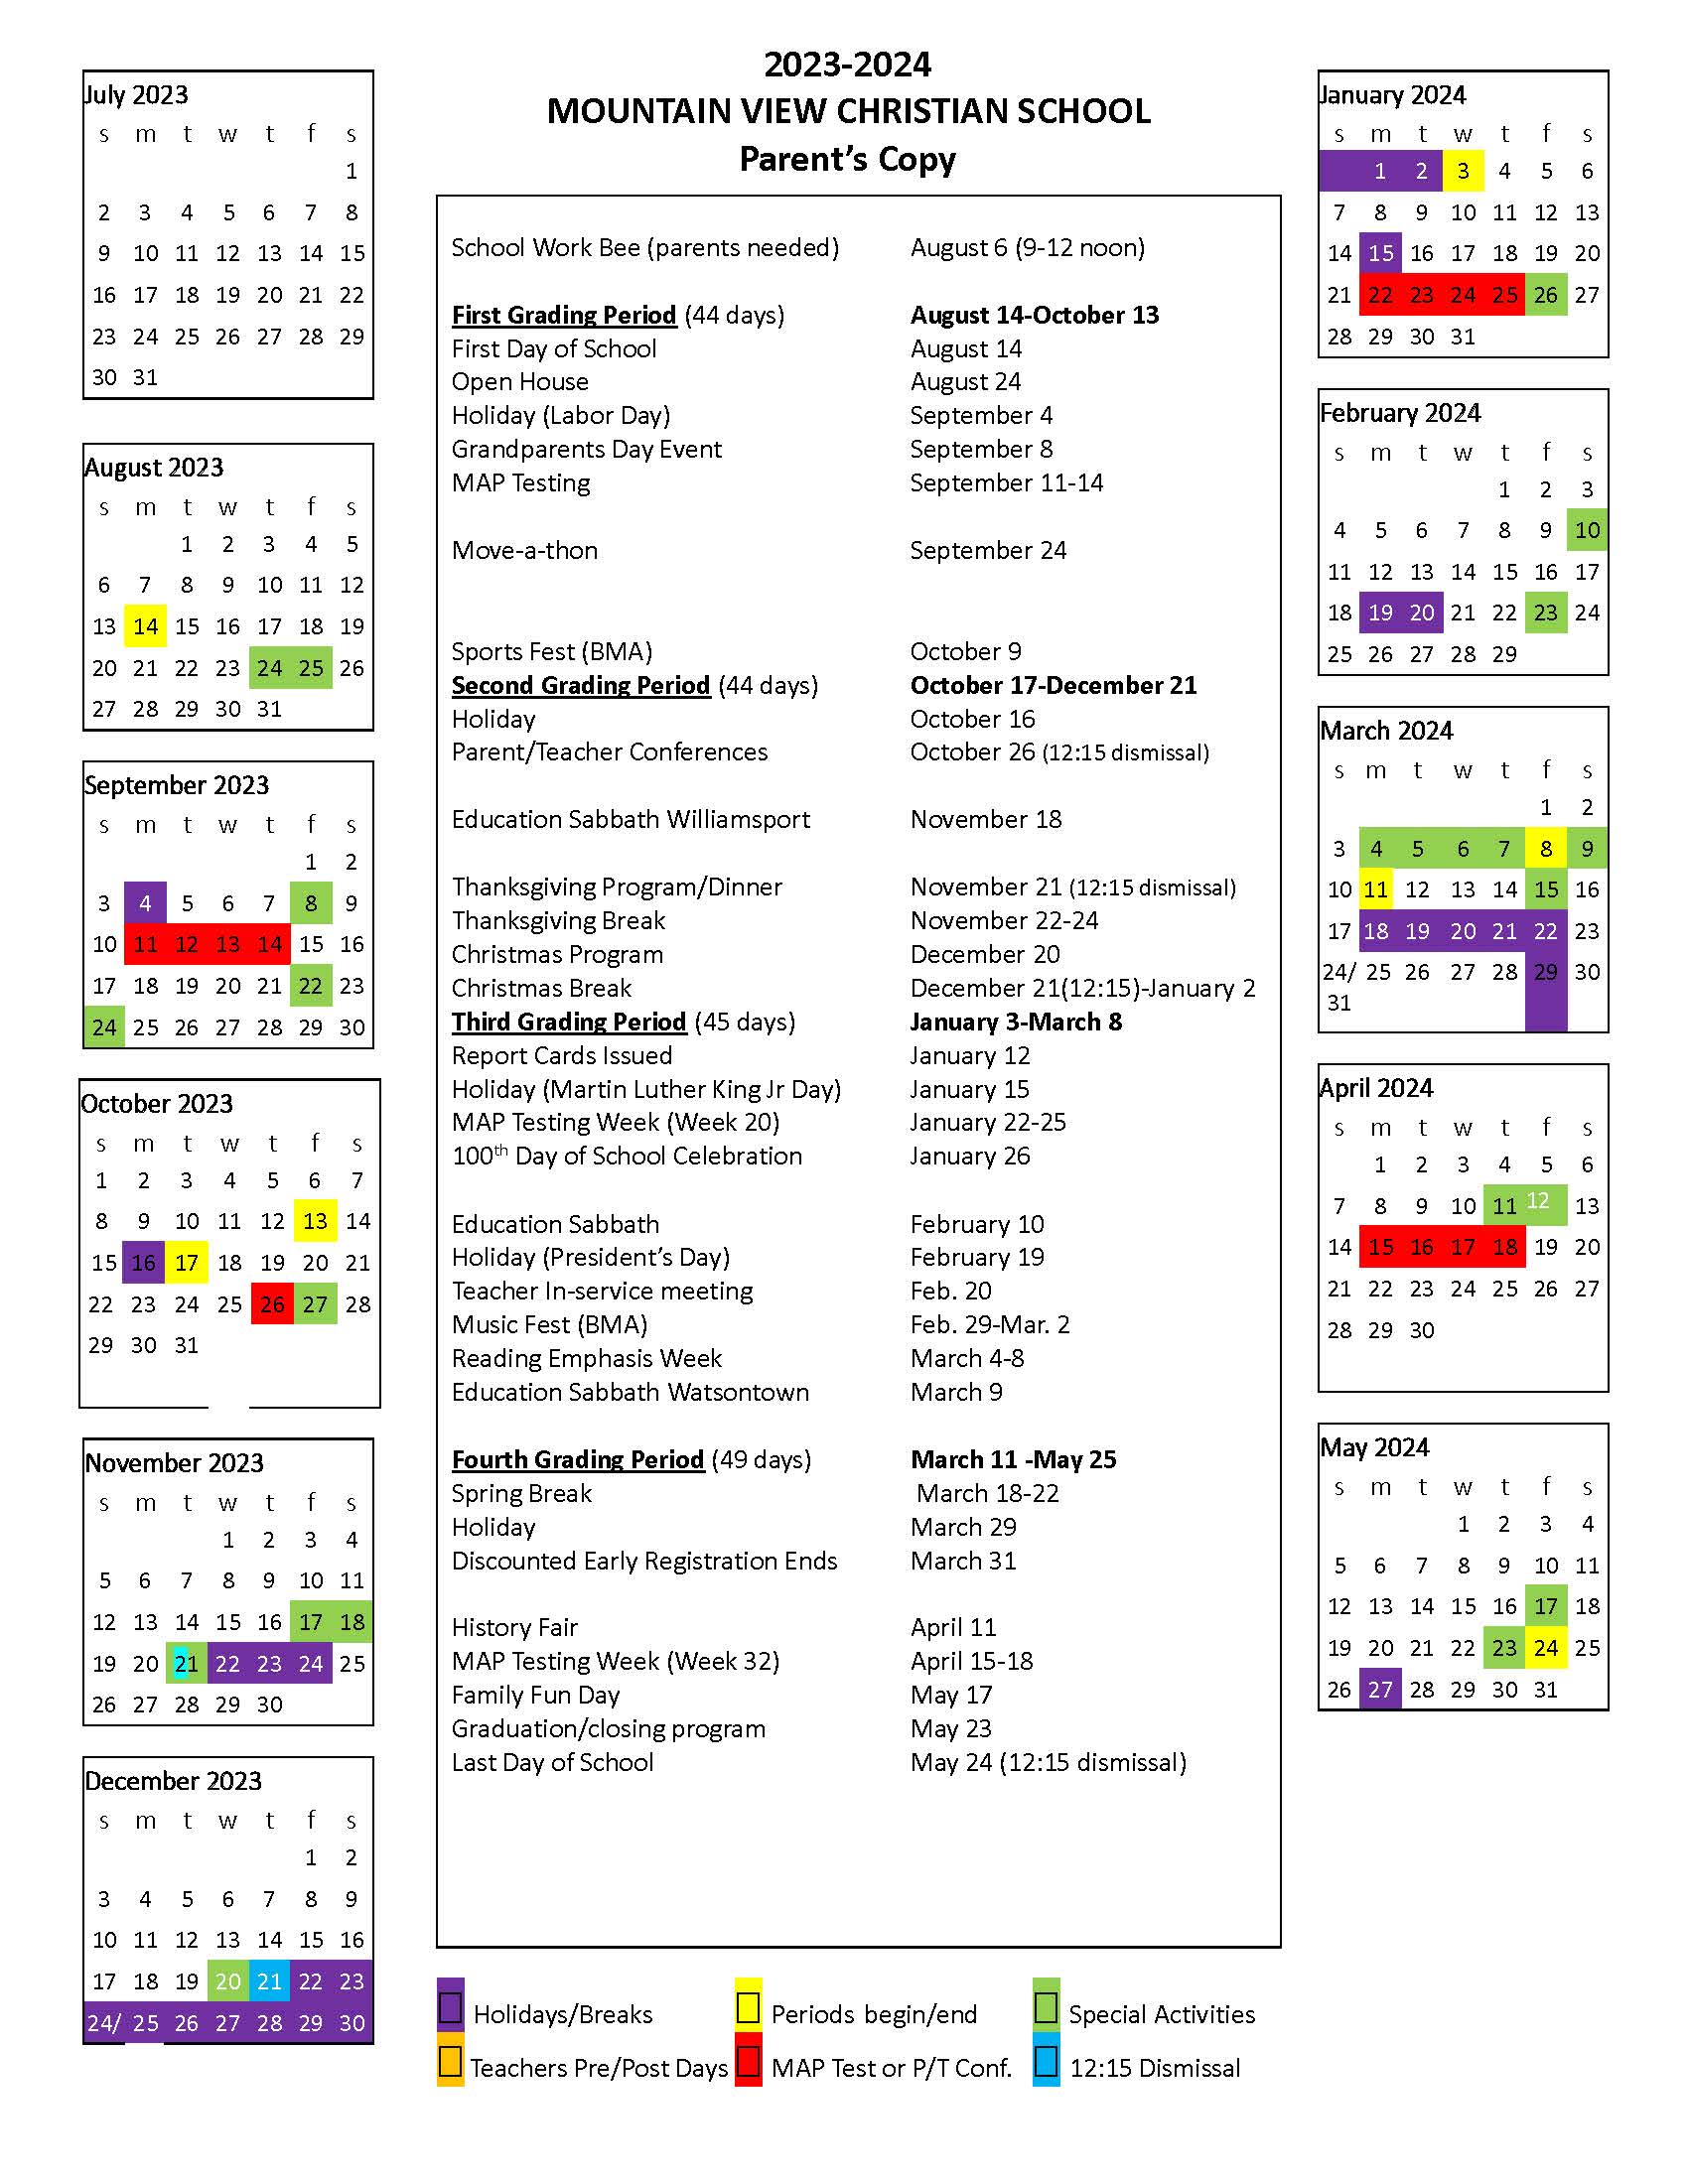 2023-24 MVCS Calendar